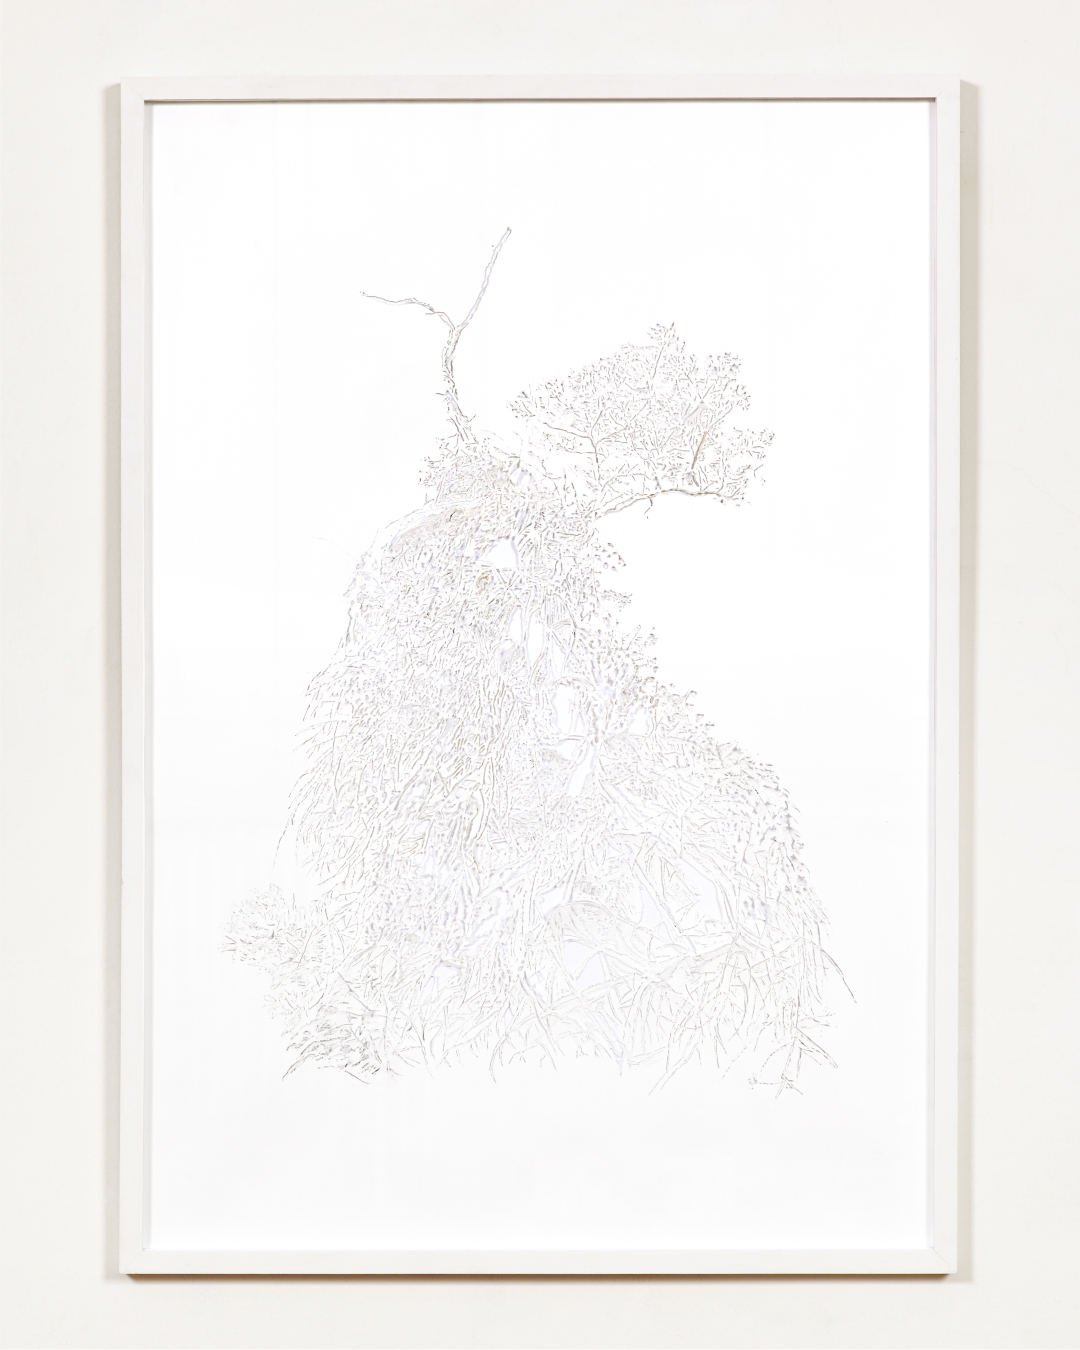 Kitti GOSZTOLA: Parasite 2014 hand-engraved paper 70x100cm